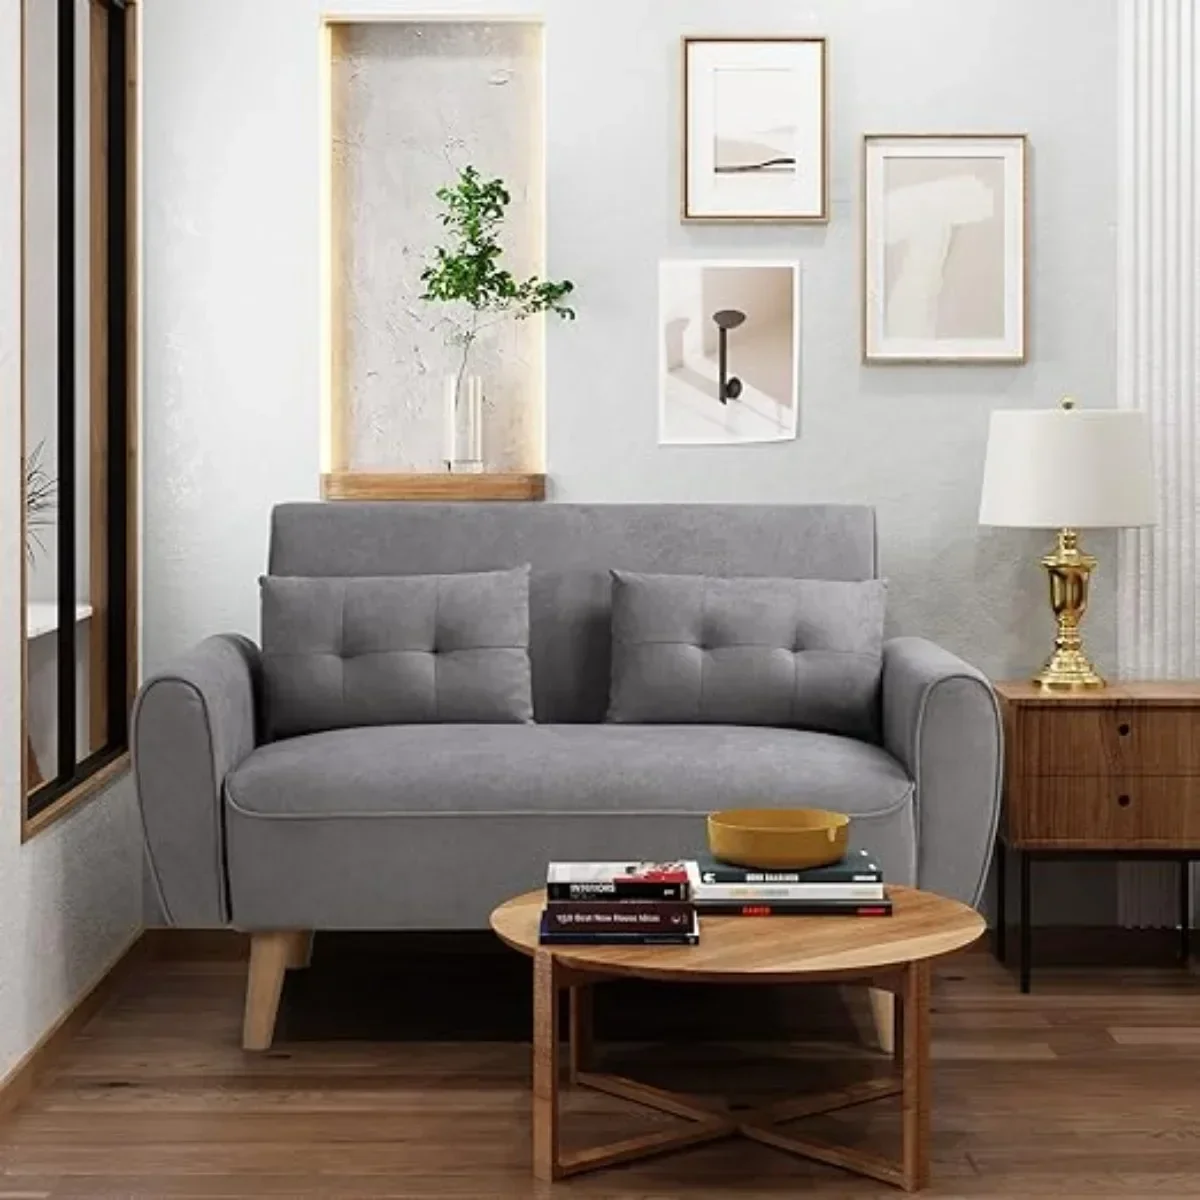 47-дюймовый маленький современный диван Loveseat, обитый тканью 2-местный диван, мягкая мебель Love Seat с 2 подушками, светло-серый